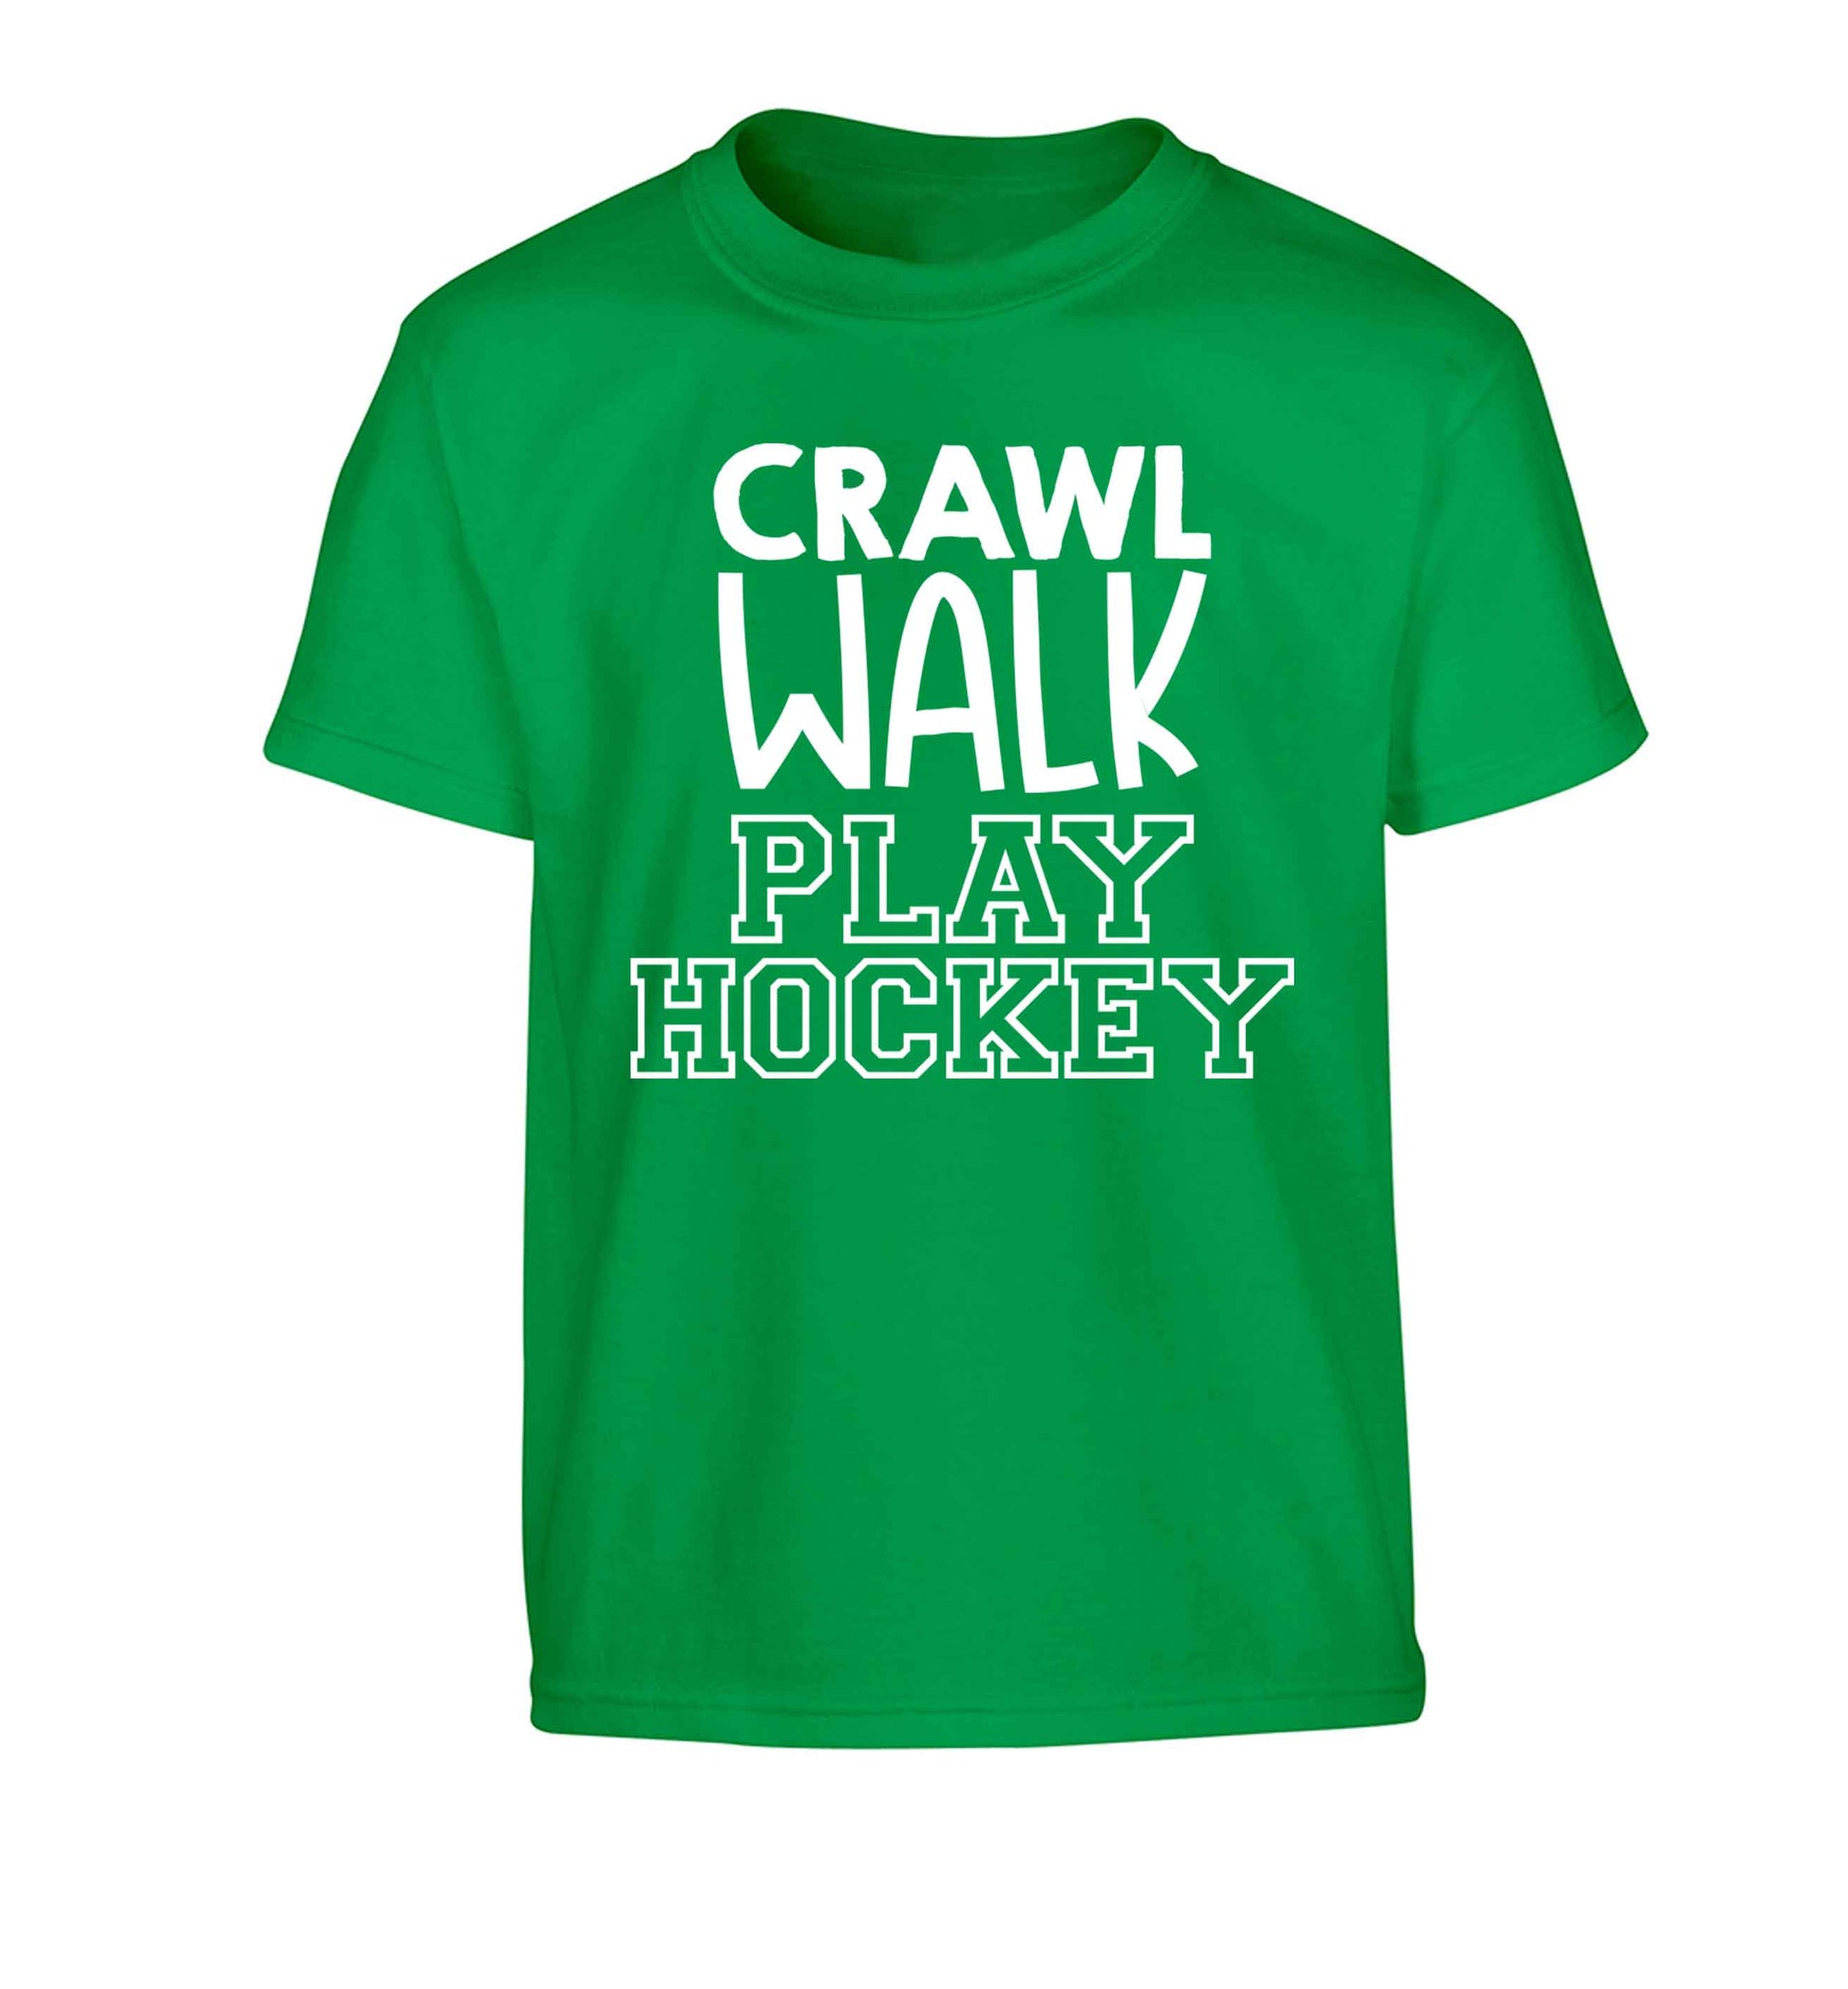 Crawl walk play hockey Children's green Tshirt 12-13 Years